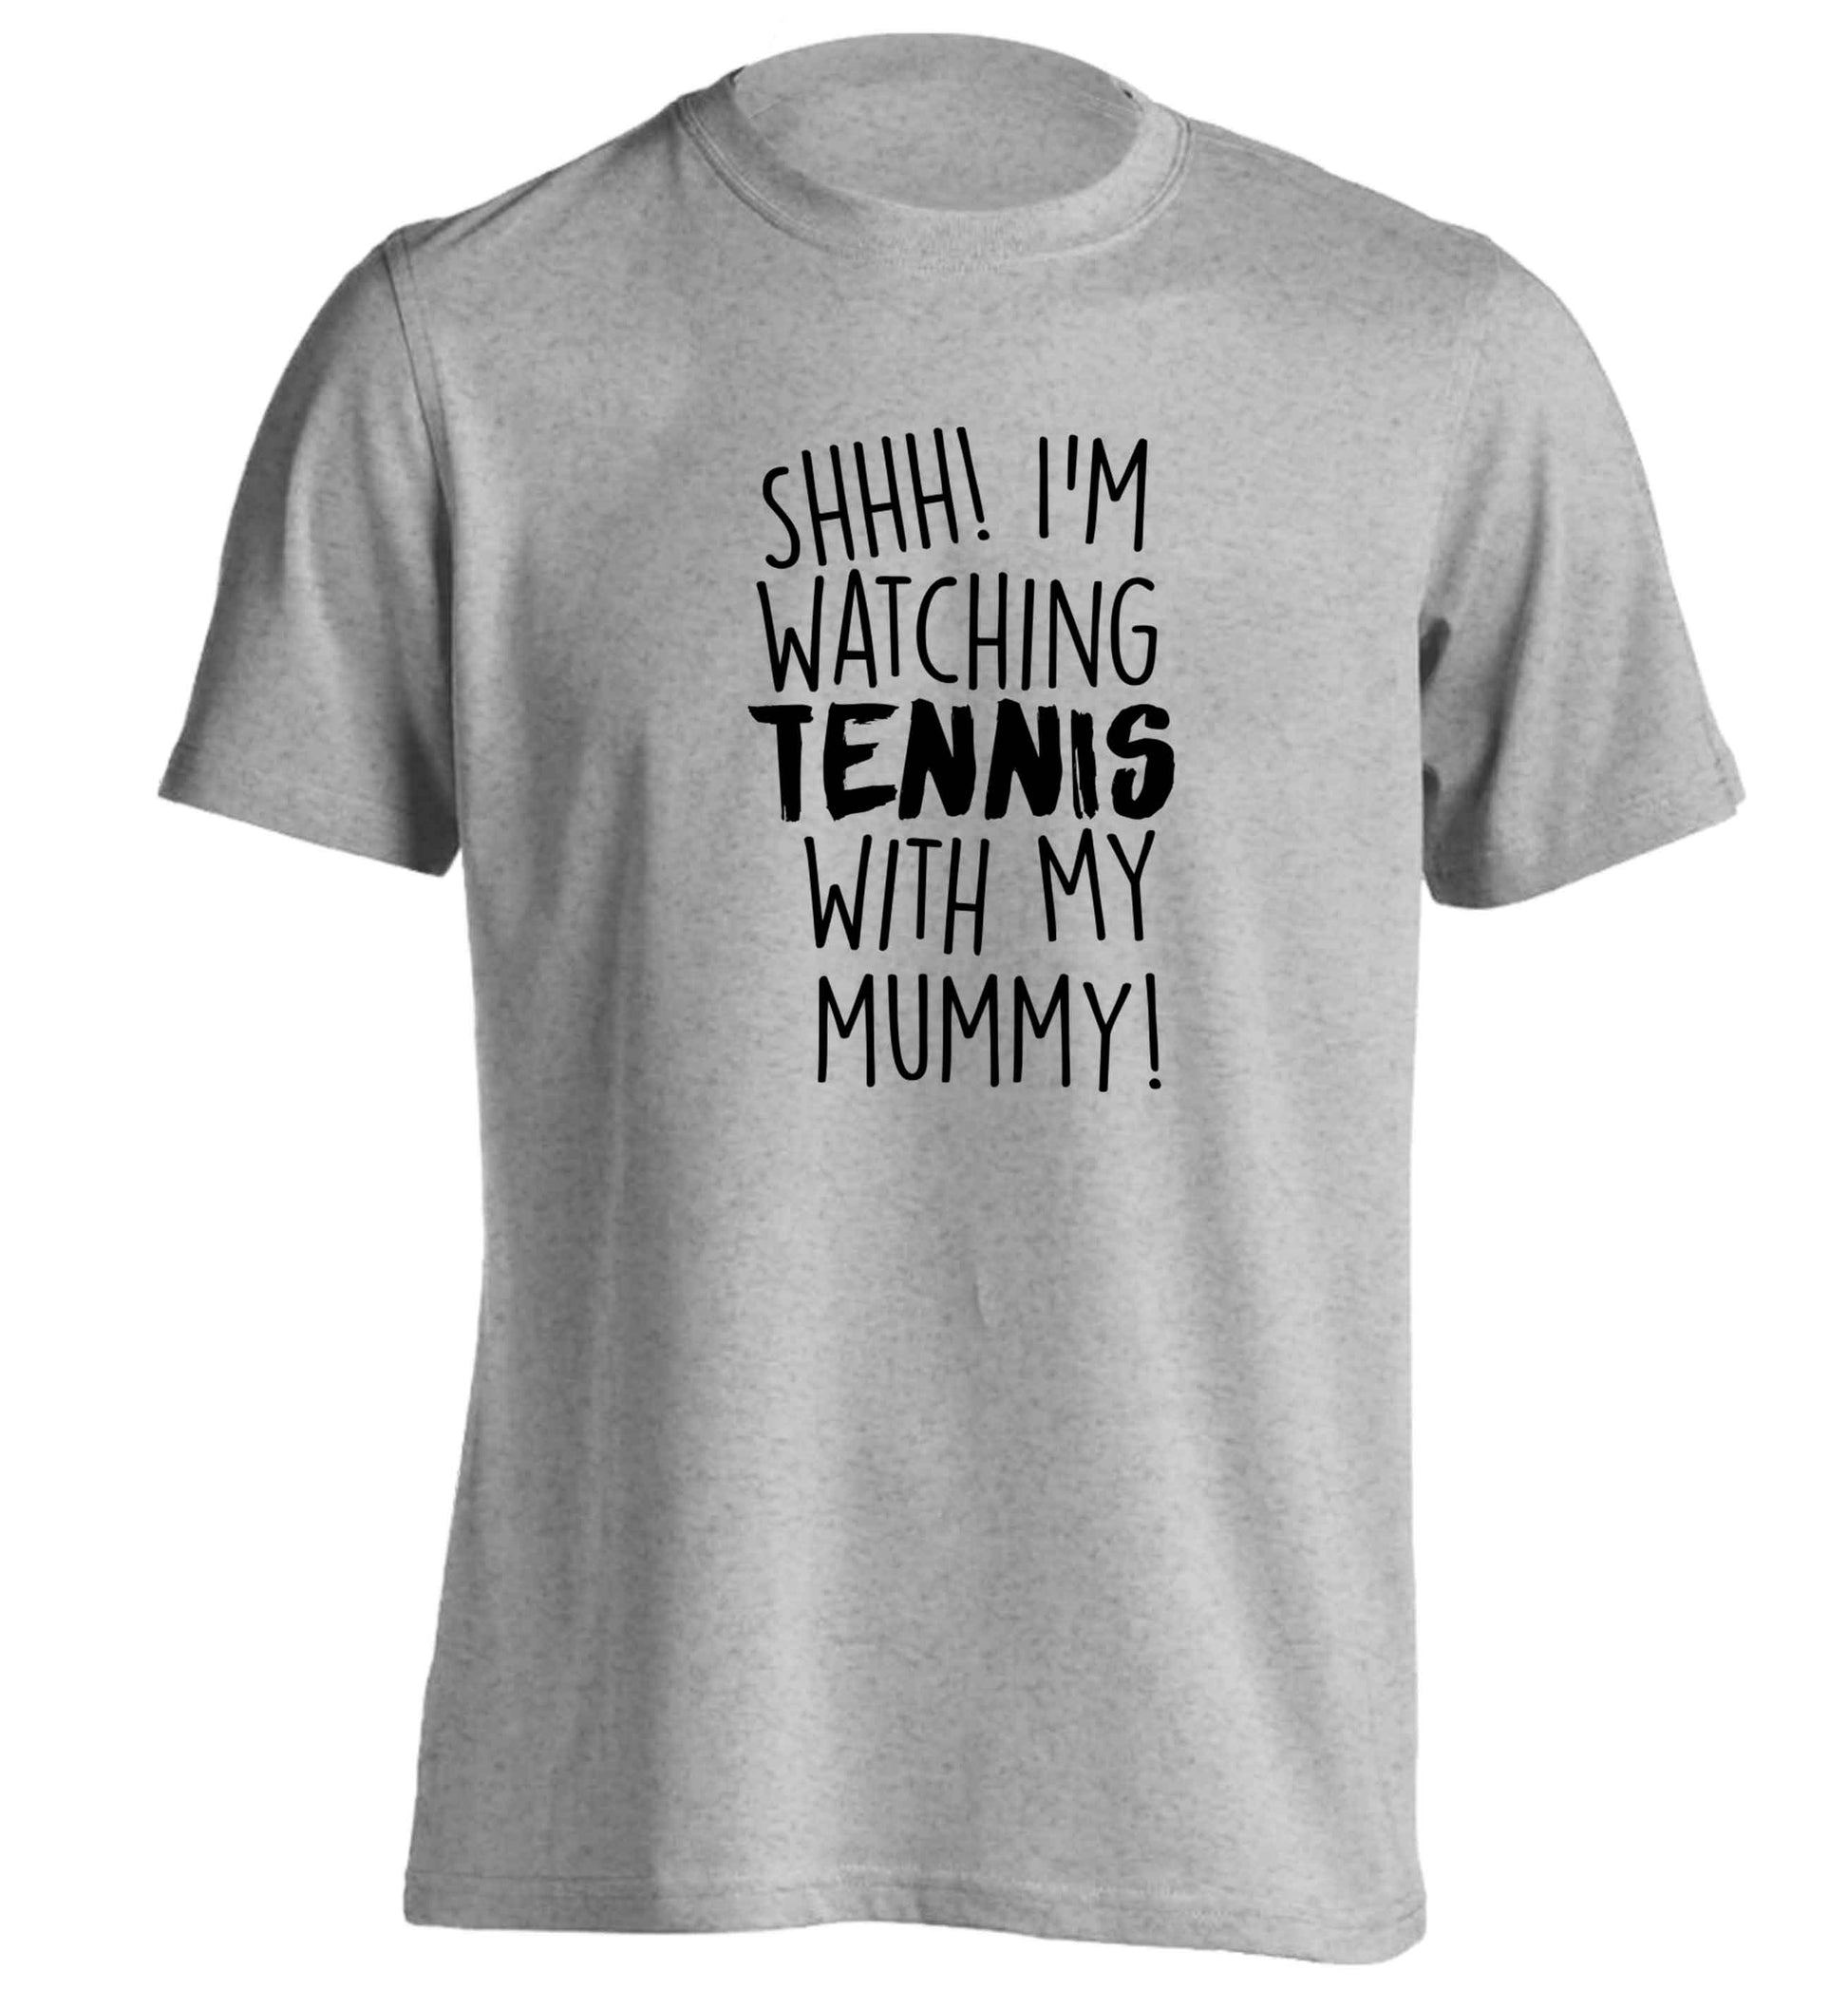 Shh! I'm watching tennis with my mummy! adults unisex grey Tshirt 2XL